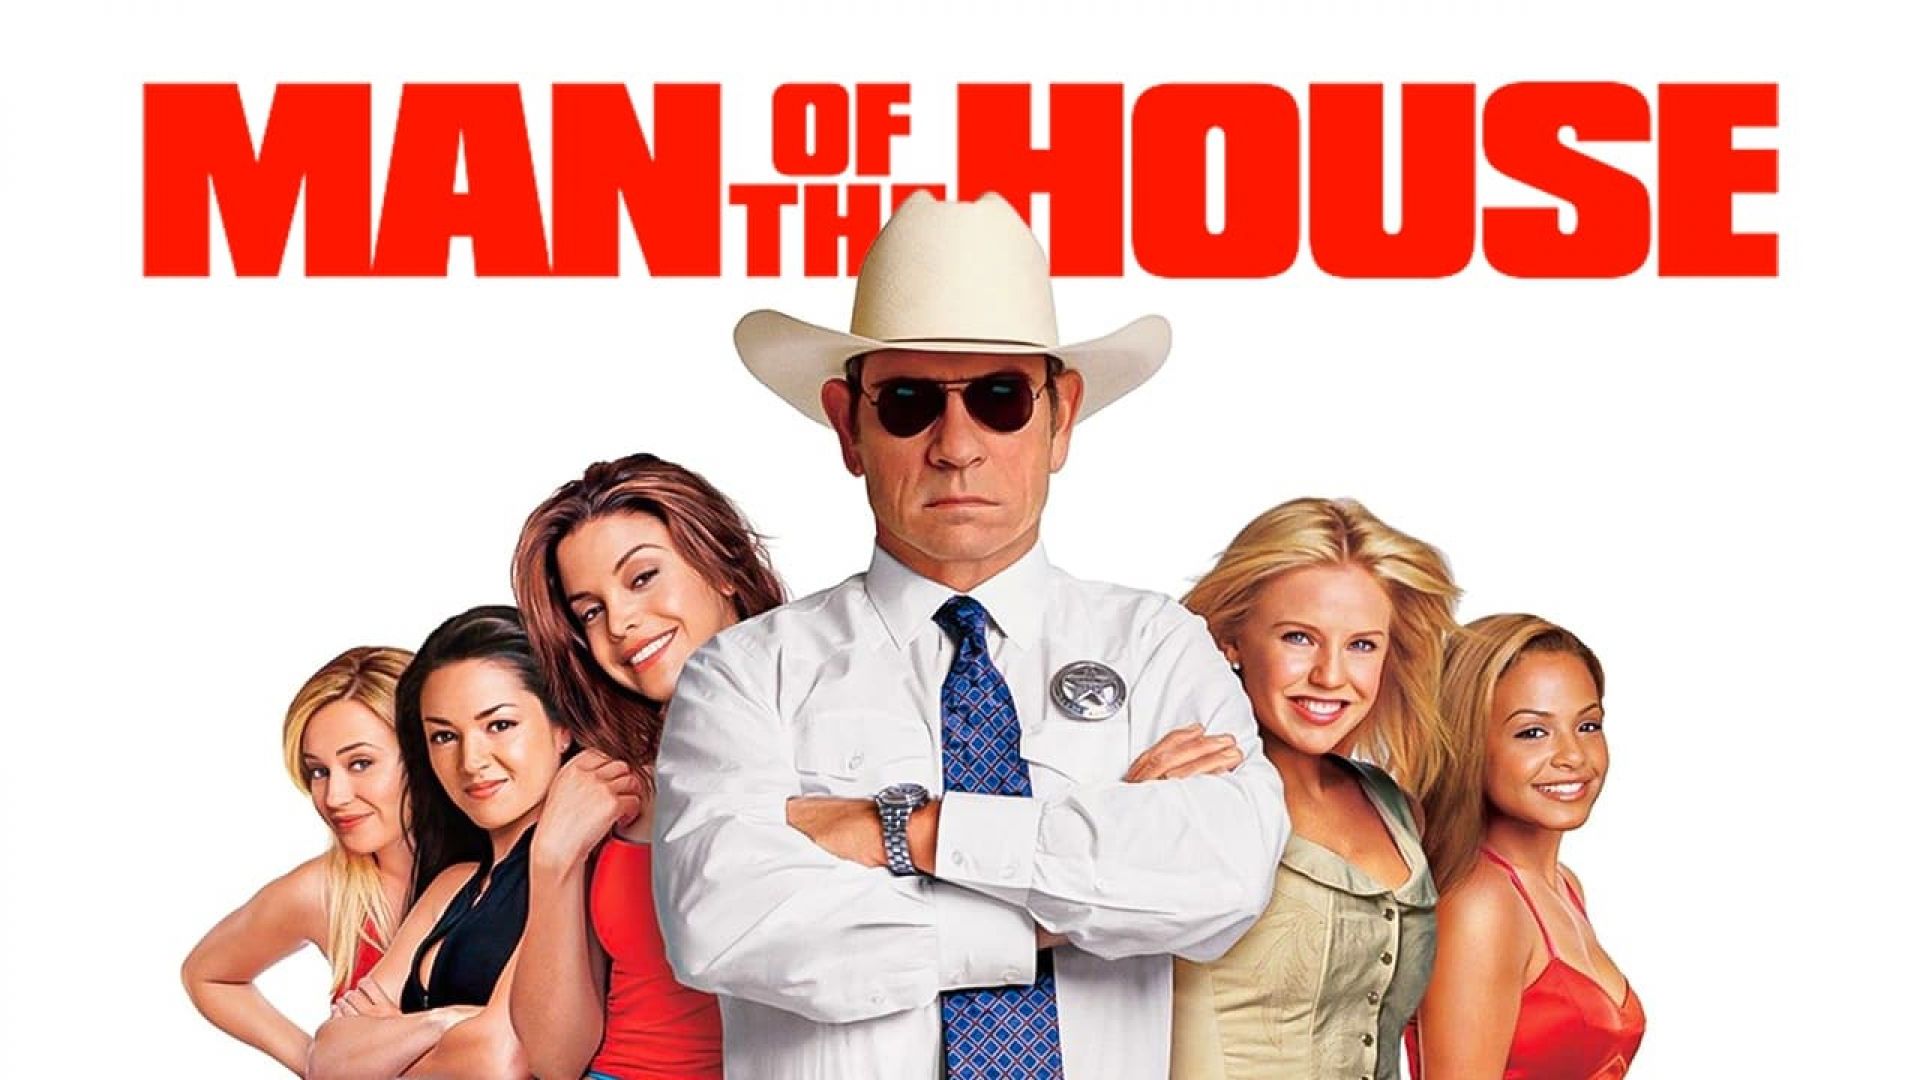 دانلود فیلم Man of the House 2005